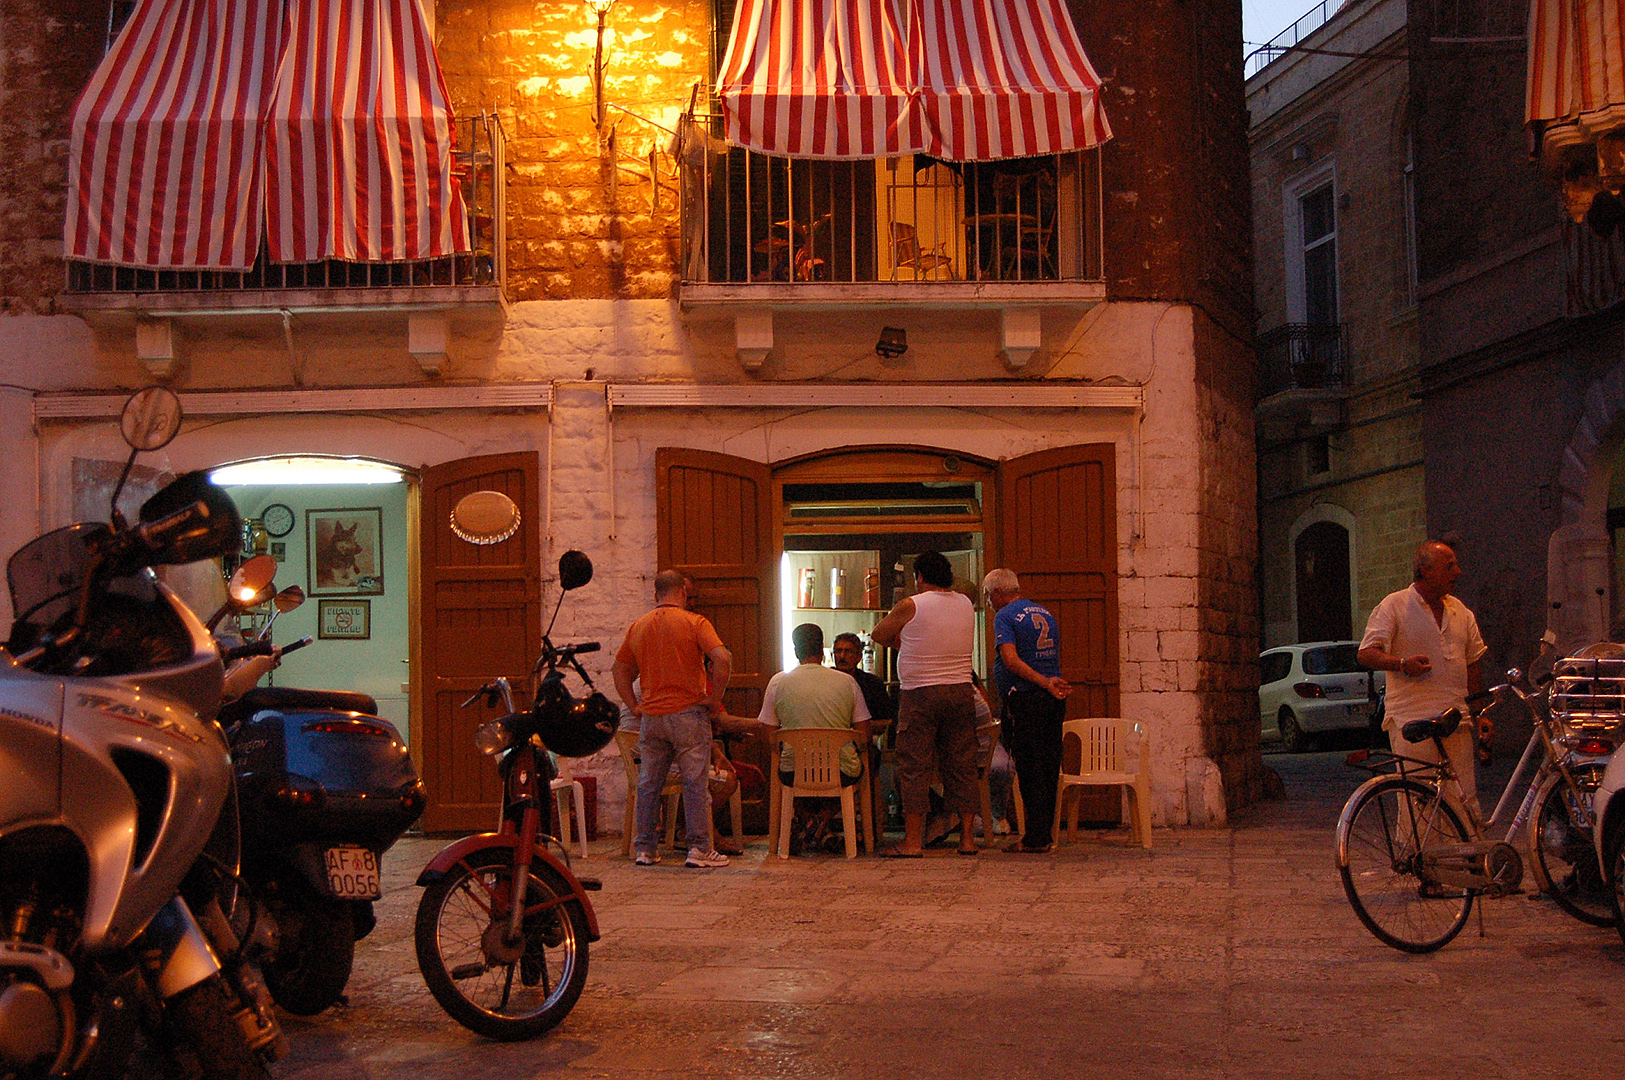 Bar in Barivecchia (Bari, Apuli, Itali), Bar in Barivecchia (Bari, Apulia, Italy)